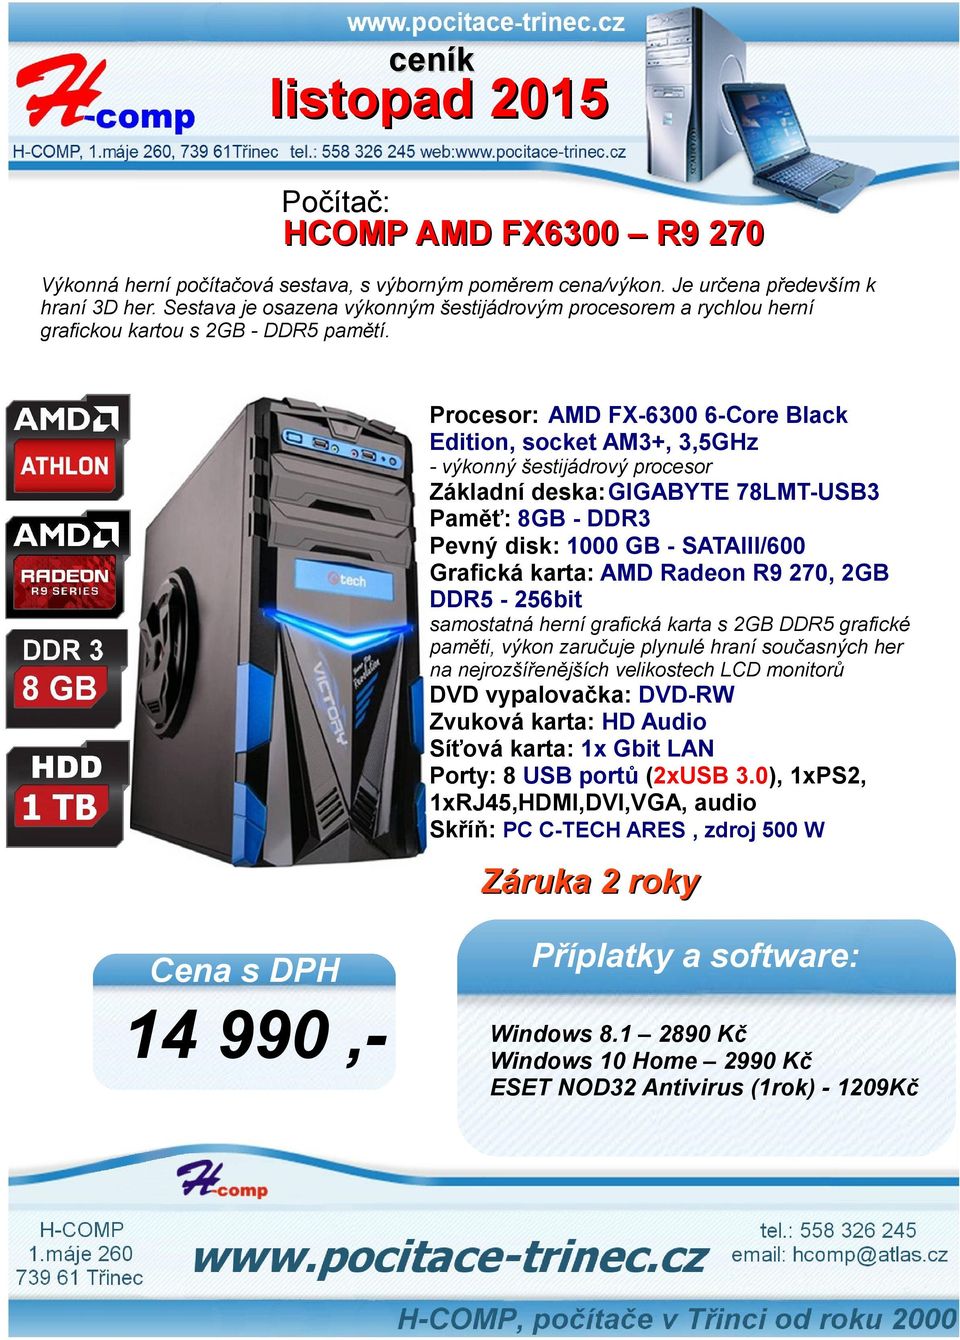 Procesor: AMD FX-6300 6-Core Black Edition, socket AM3+, 3,5GHz - výkonný šestijádrový procesor Základní deska:gigabyte 78LMT-USB3 Paměť: 8GB - DDR3 Pevný disk: 1000 GB -